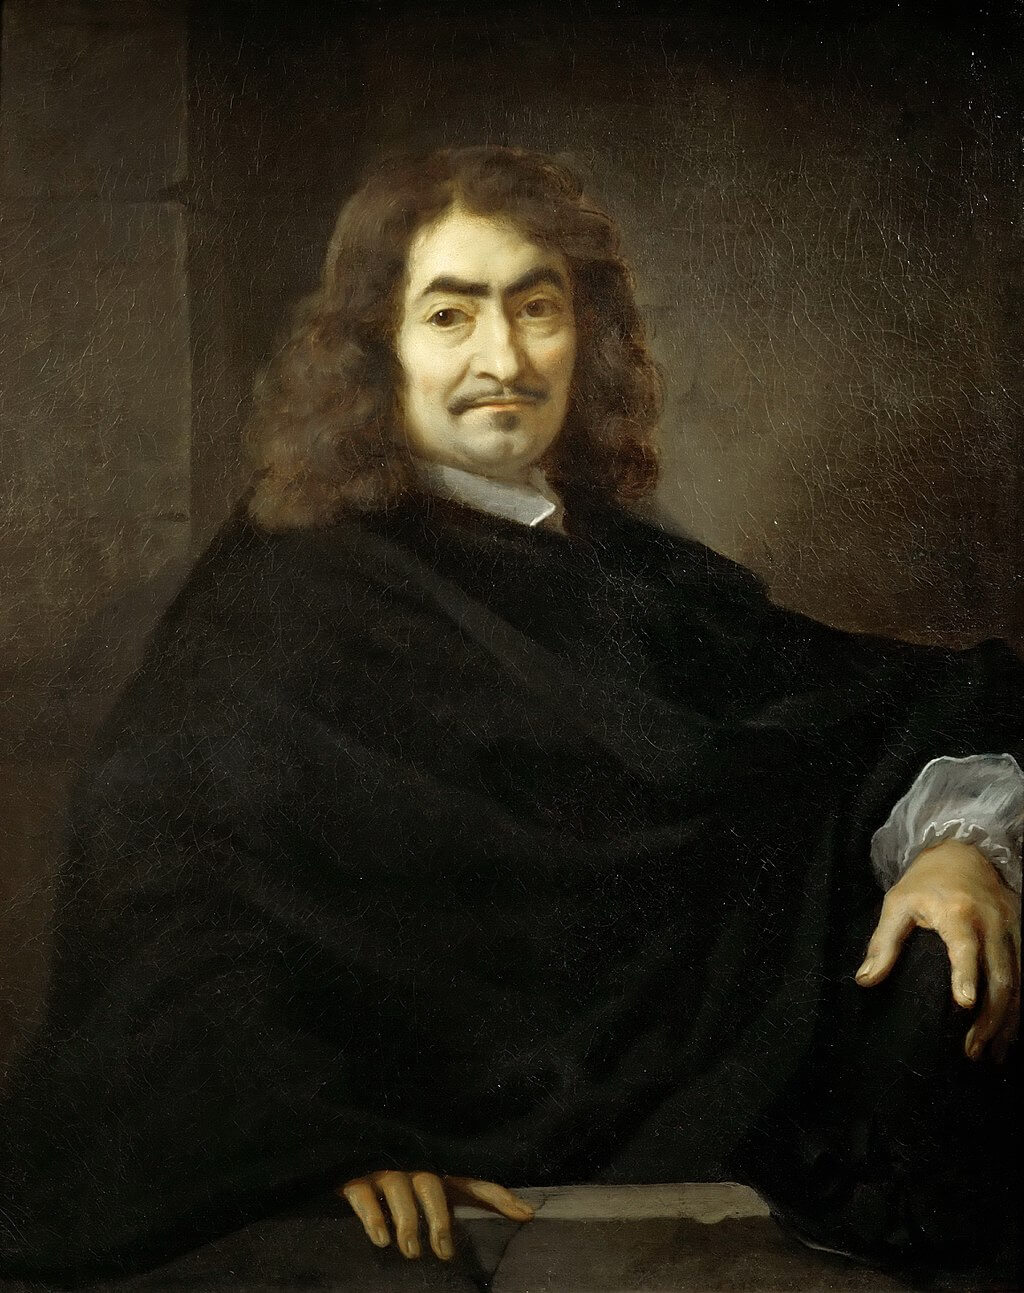 Portrait of Rene Descartes by Sébastien Bourdon